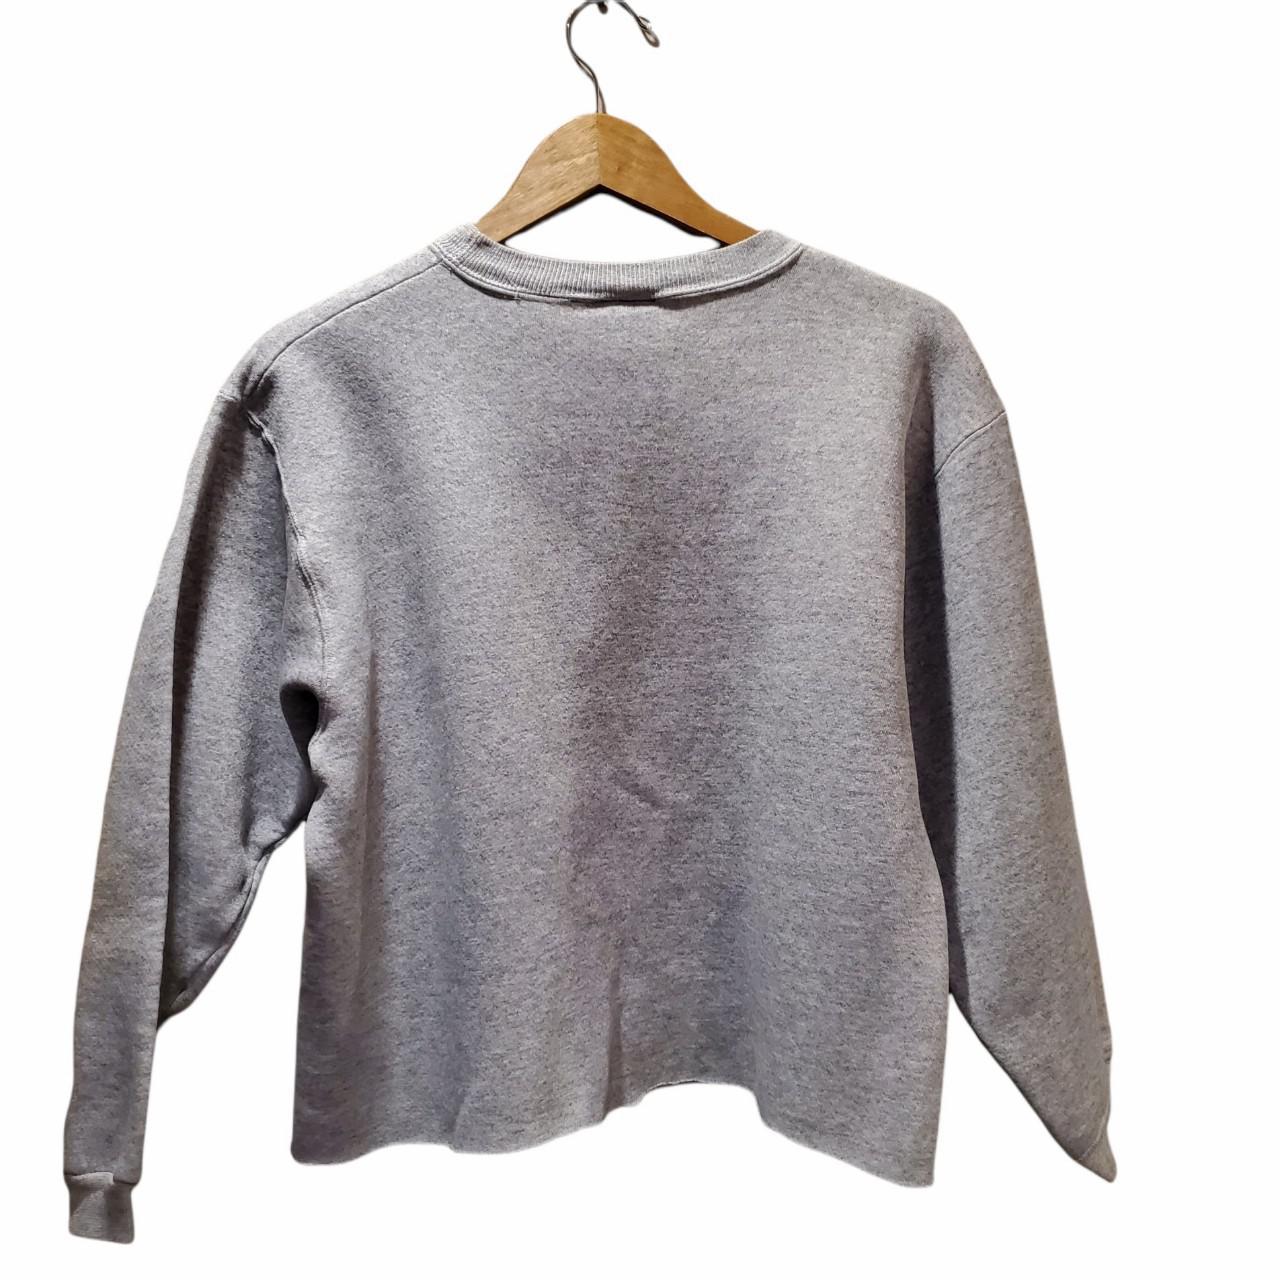 Women's Grey and Navy Sweatshirt | Depop